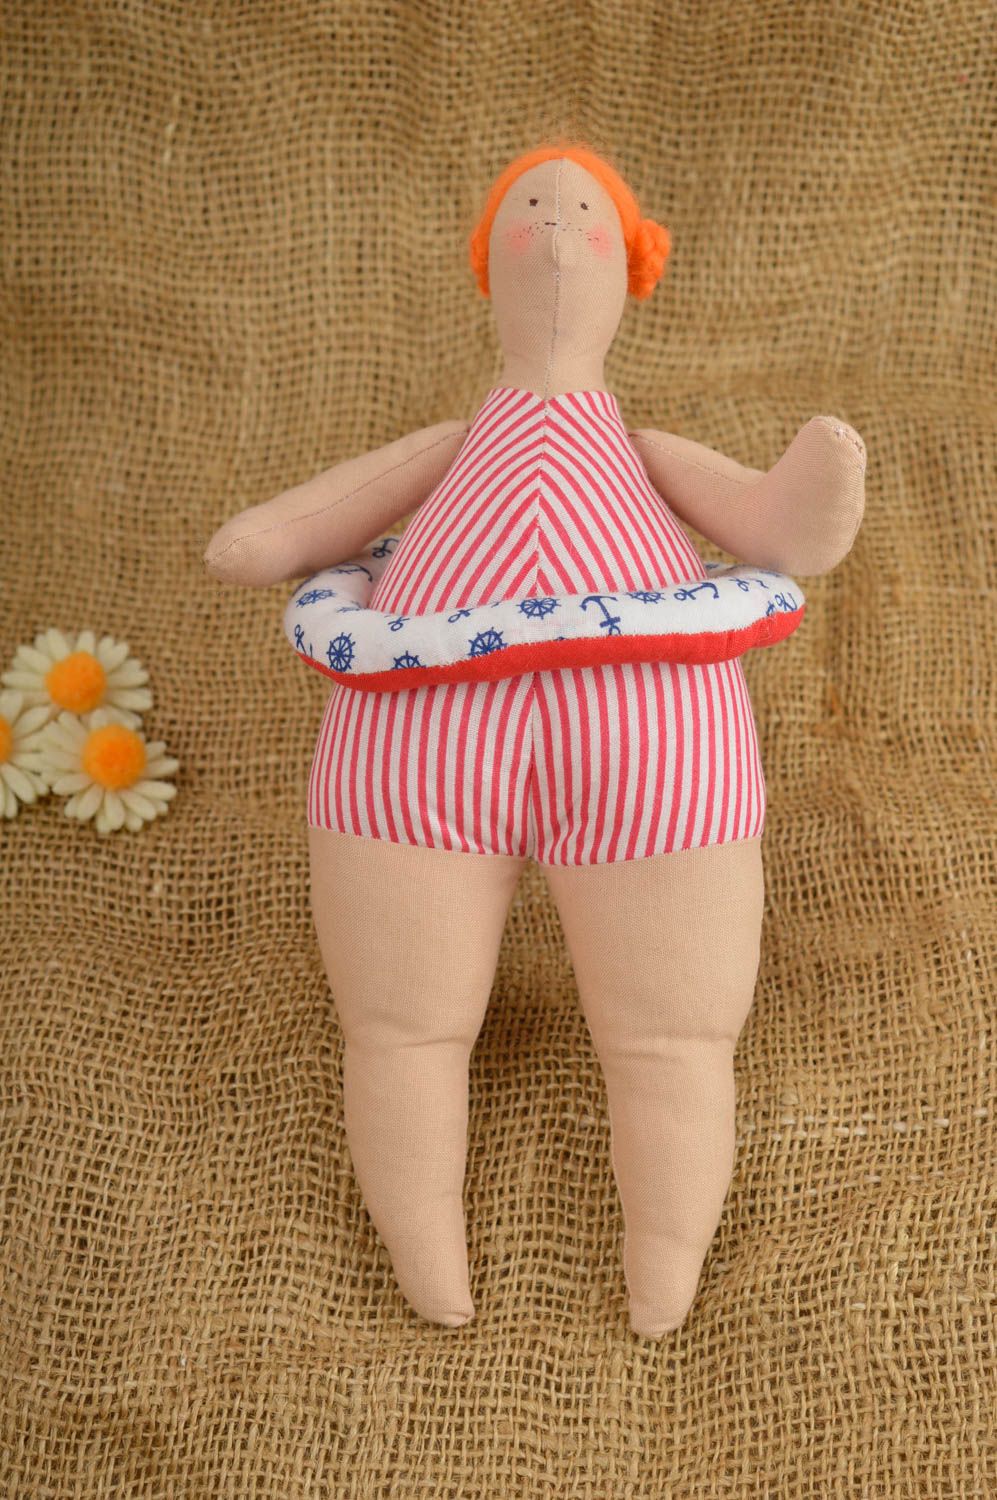 Deko Puppe handmade Deko fürs Haus originell weiches Spielzeug für Interieur foto 1